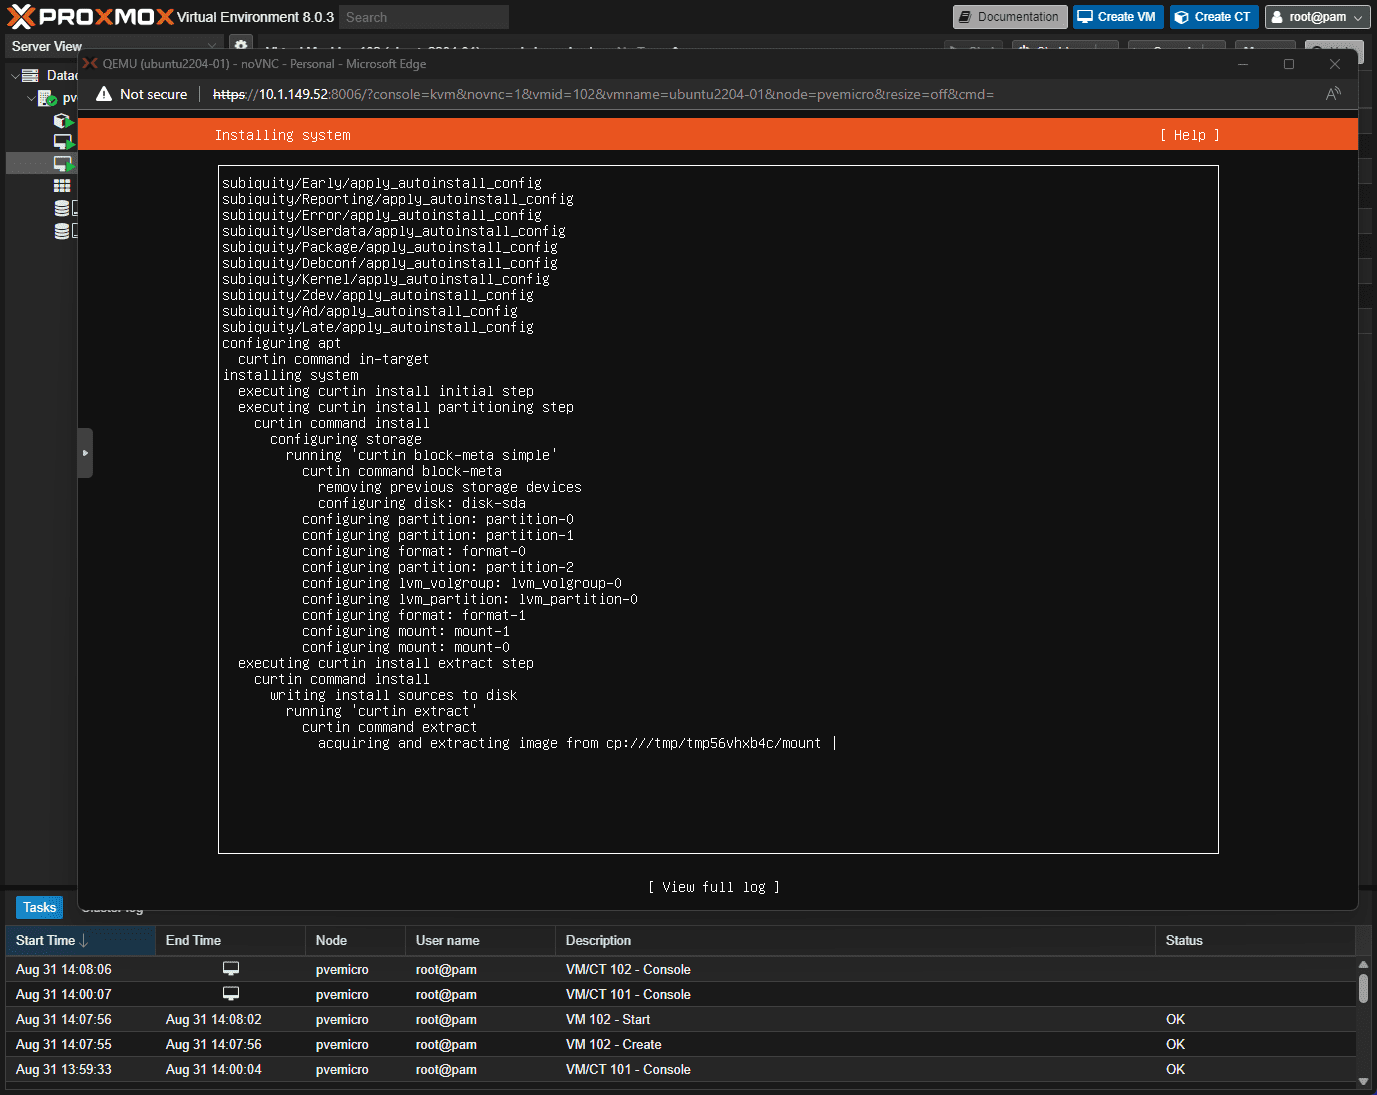 Install of ubuntu 22.04 running